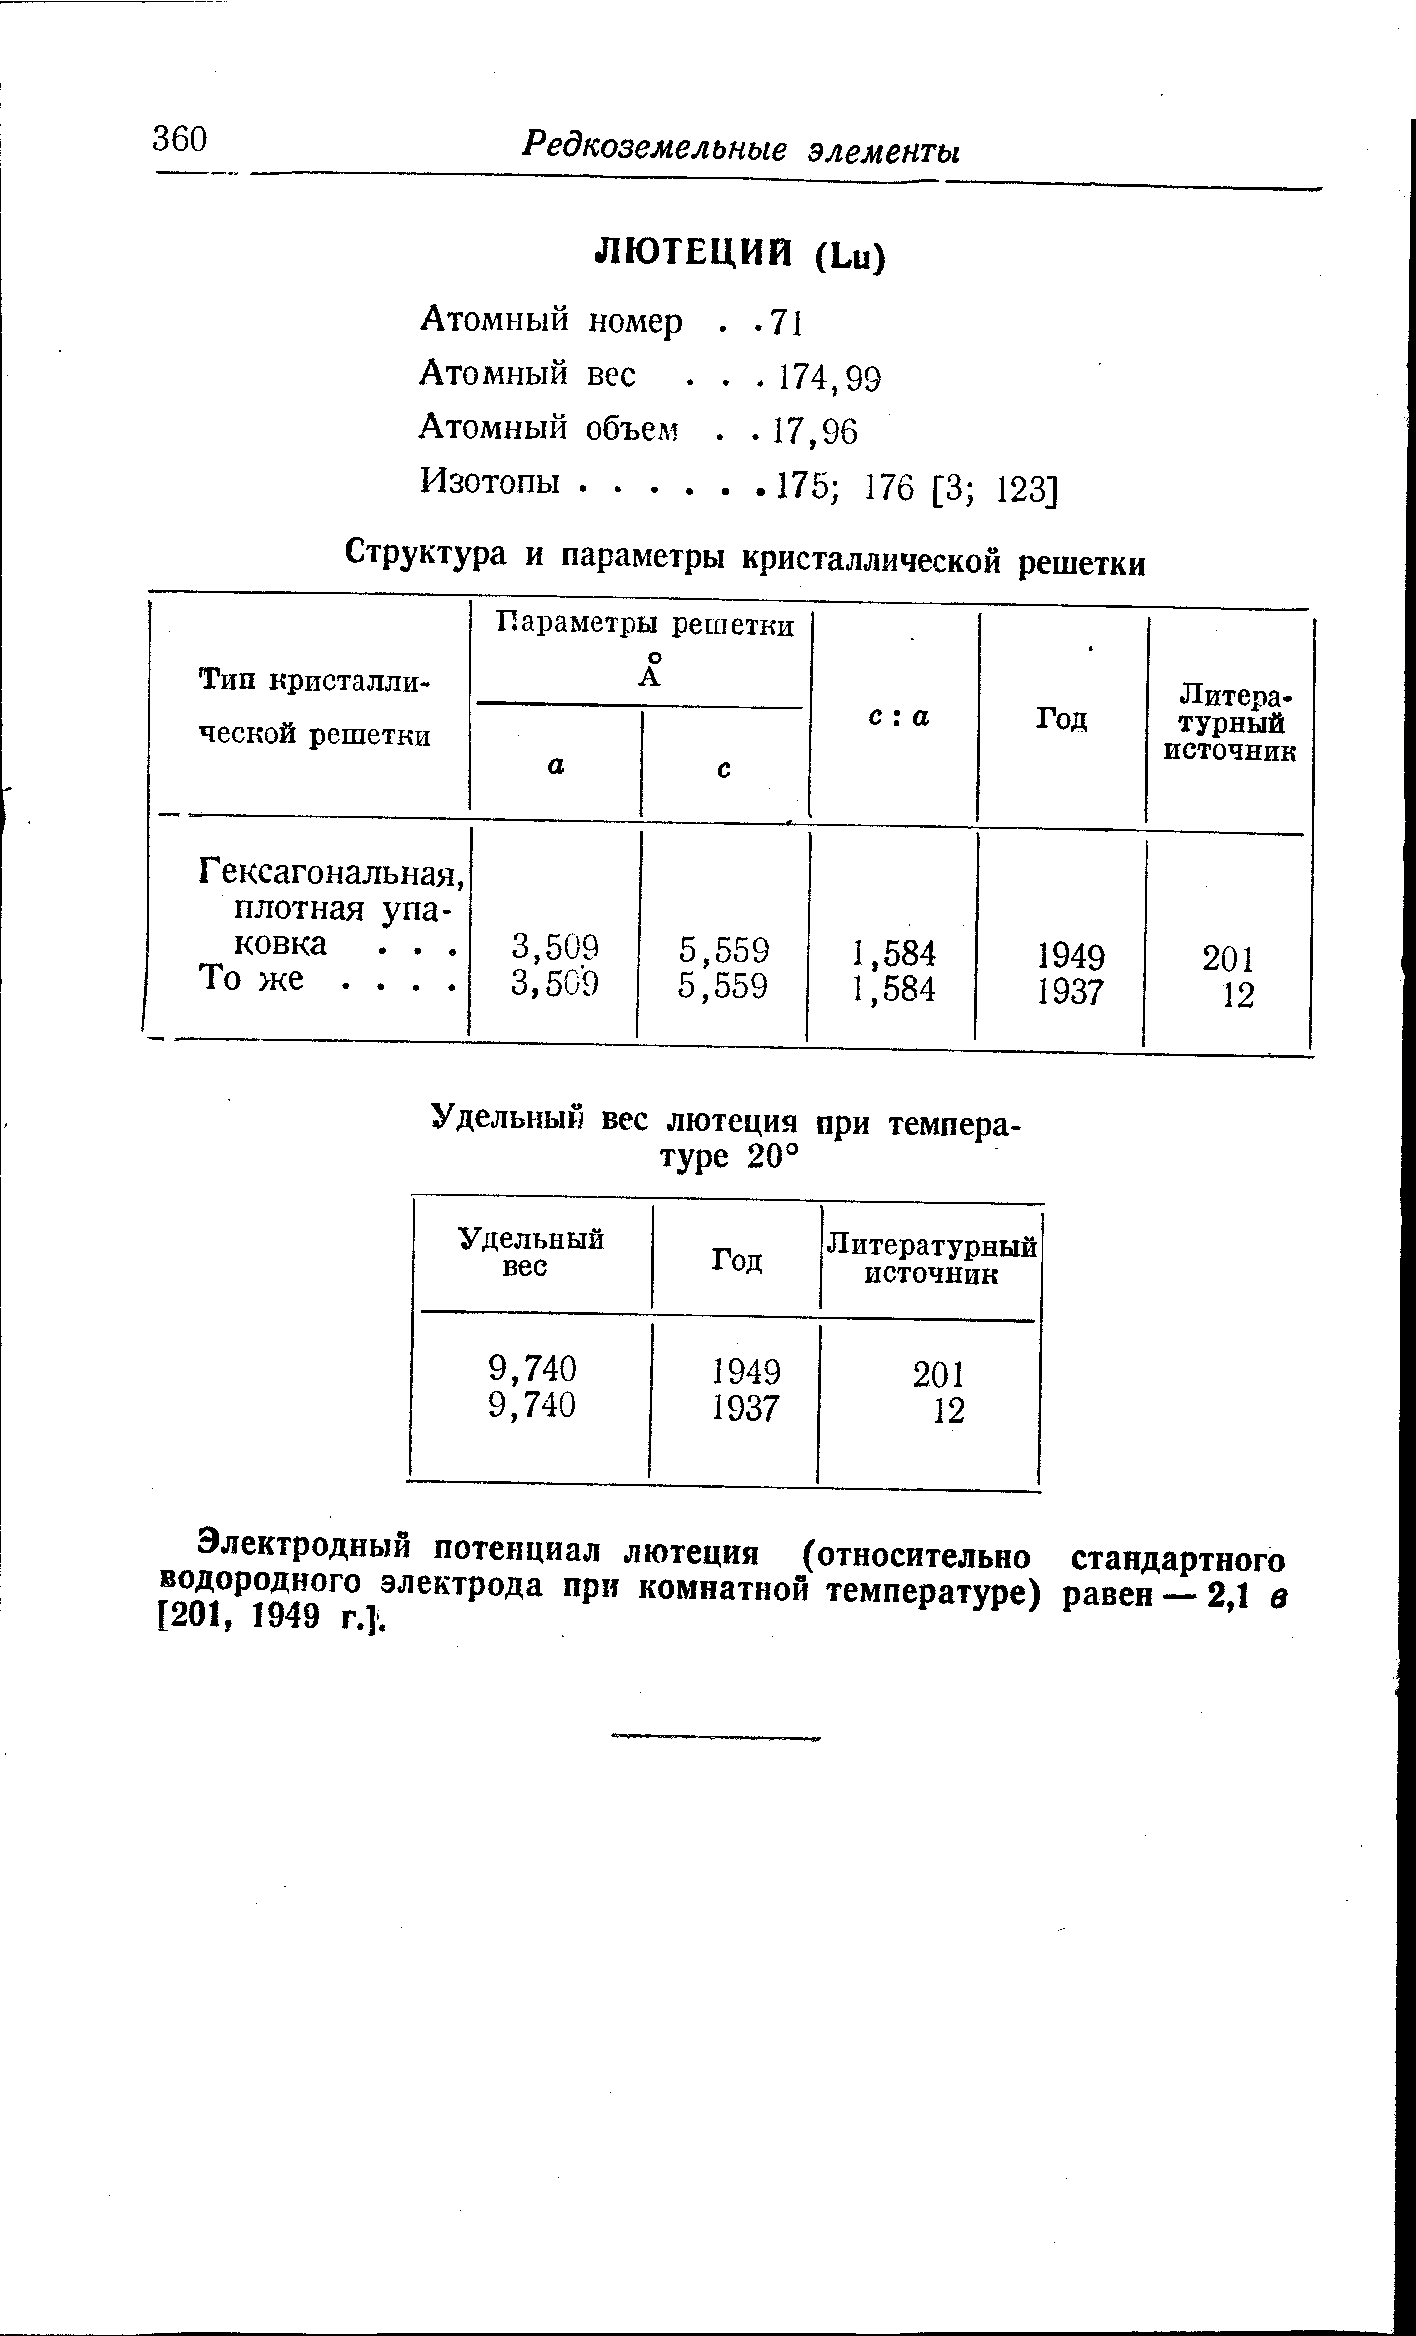 Электродный потенциал лютеция (относительно стандартного водородного электрода при комнатной температуре) равен — 2,1 в [201, 1949 г.].